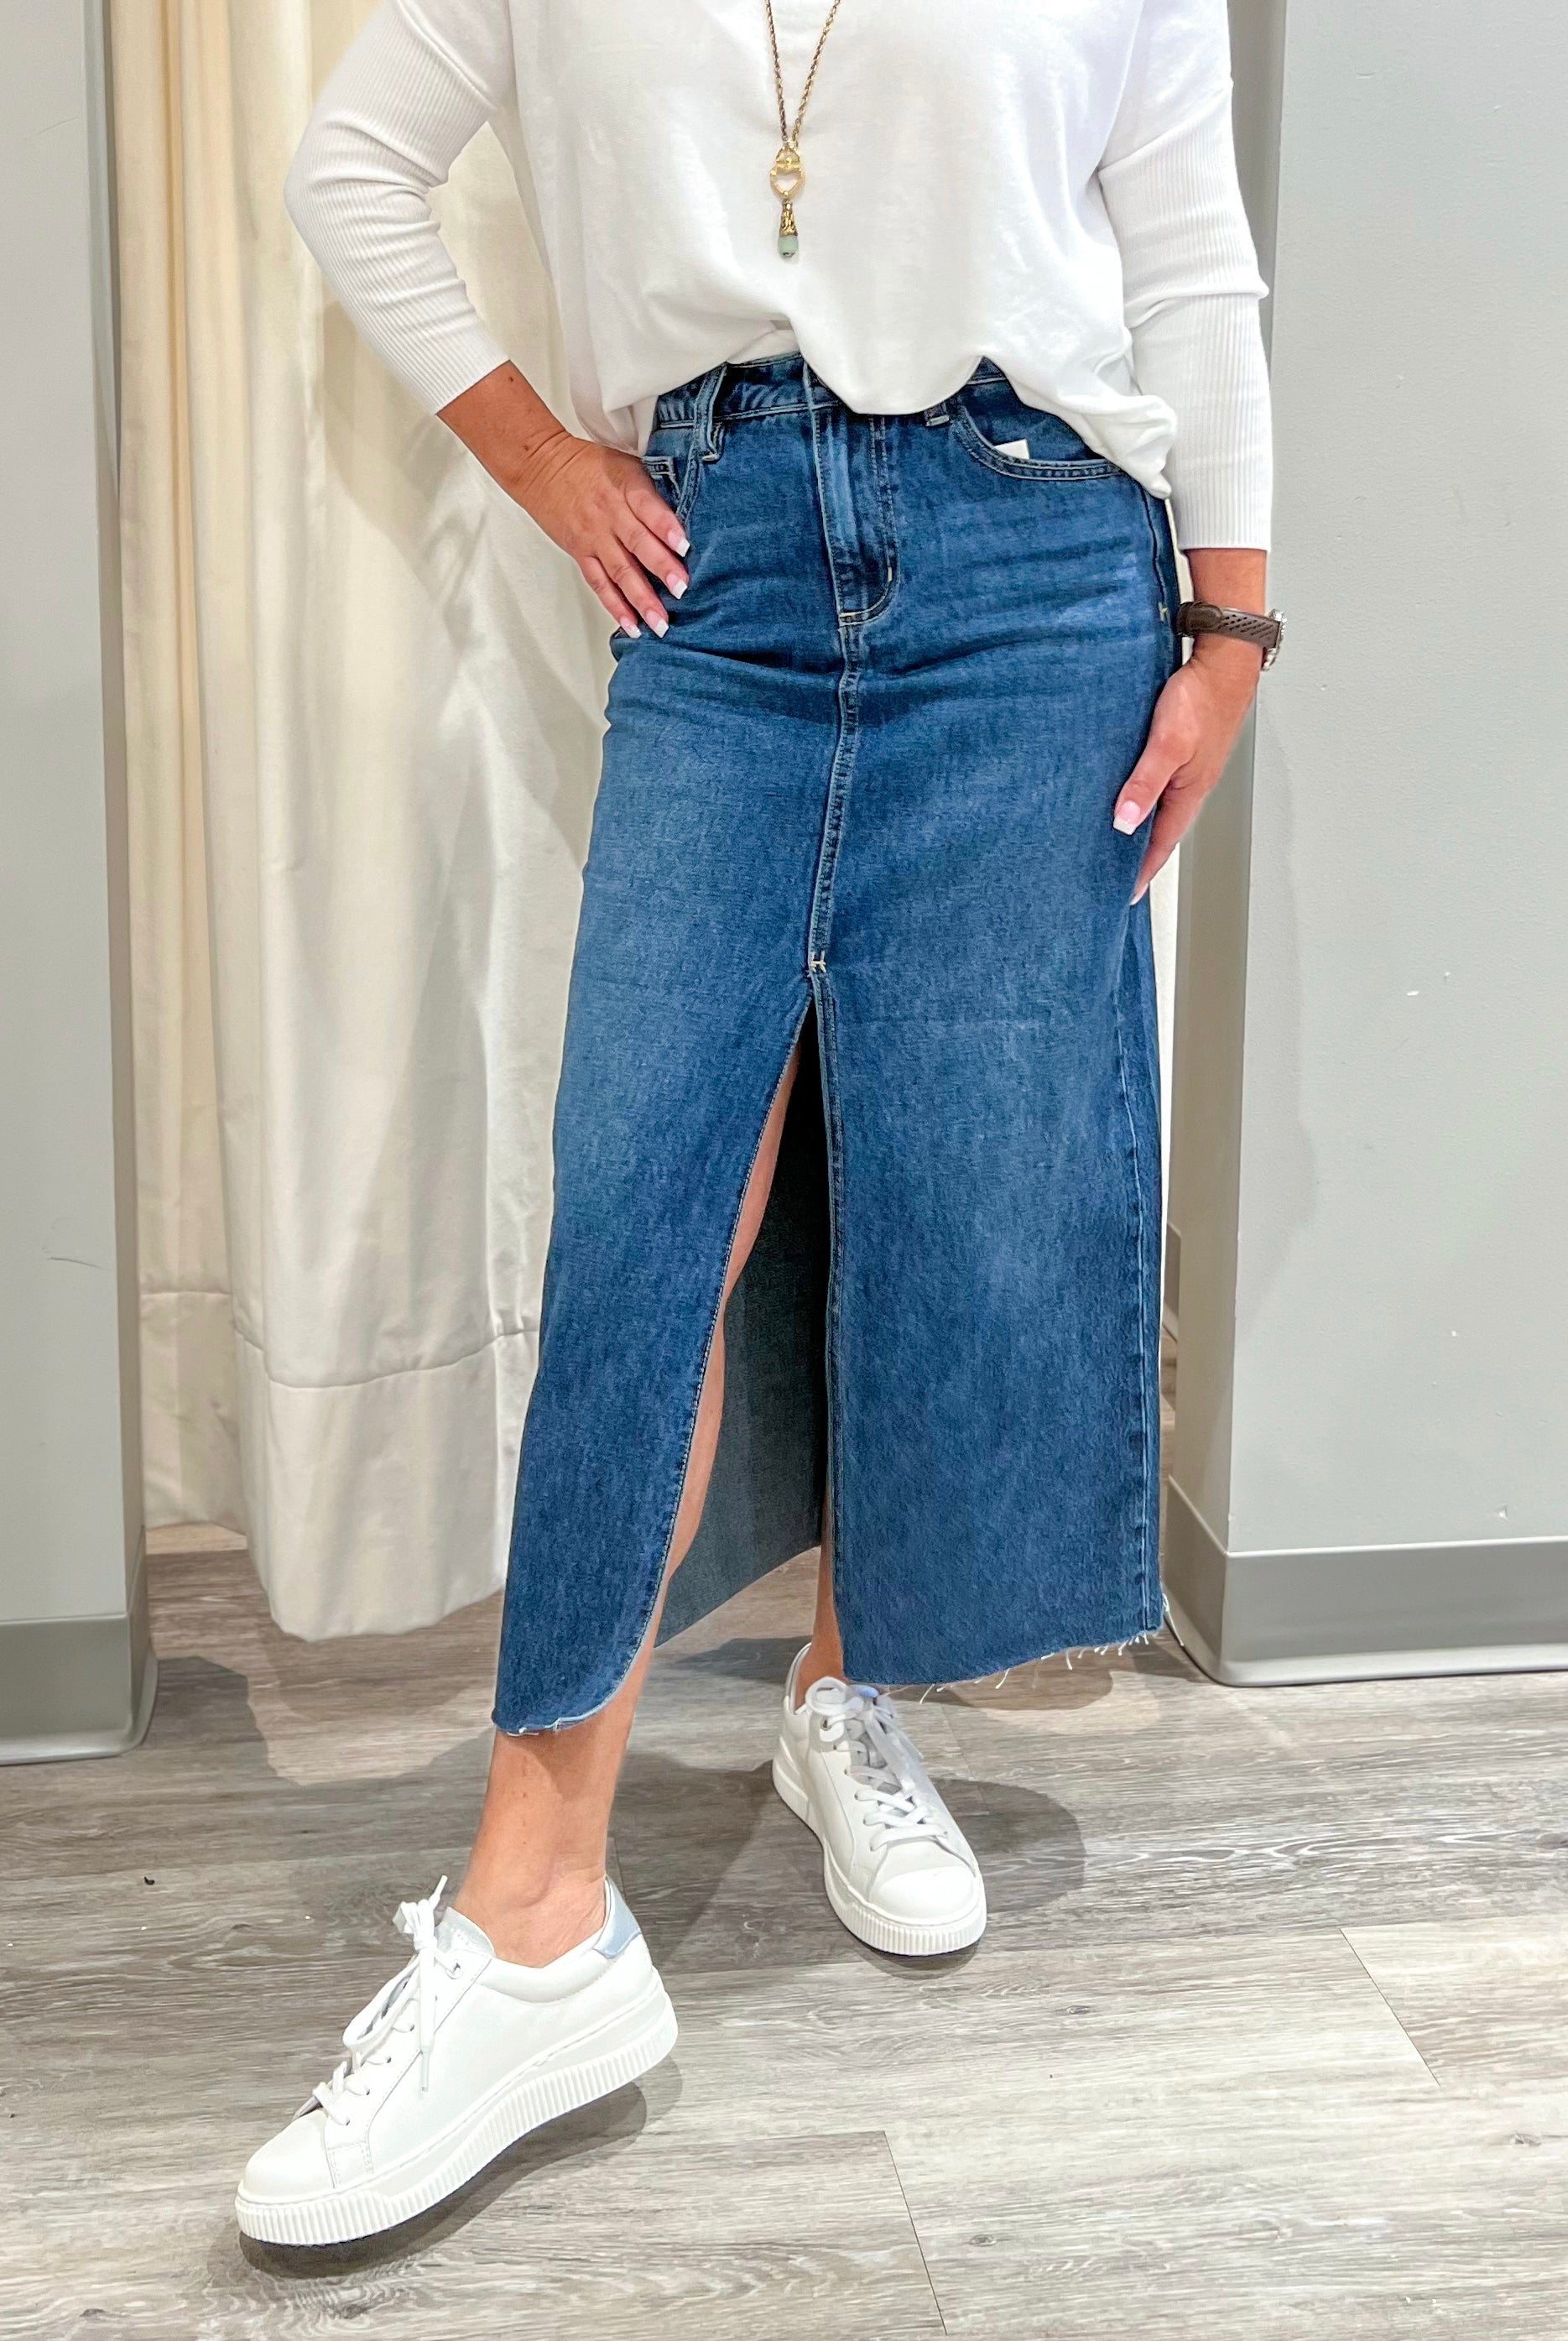 Mainstream Boutique Stillwater Trendy Denim Skirt